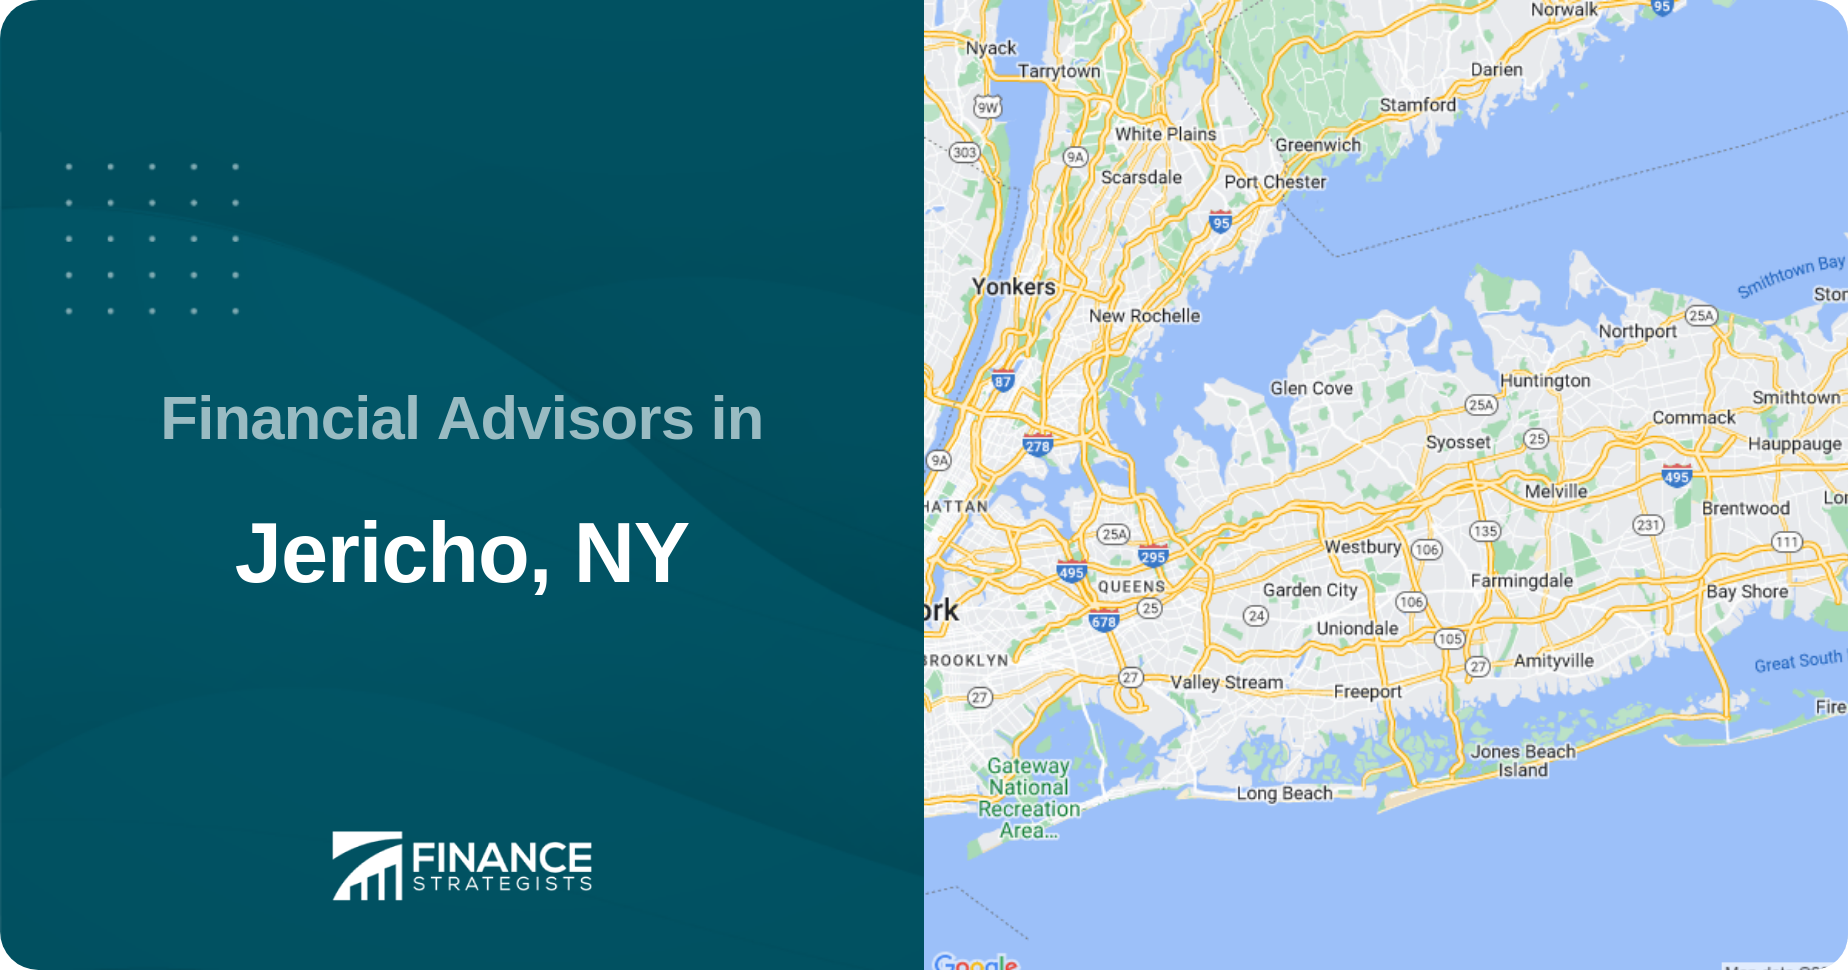 Financial Advisors in Jericho, NY